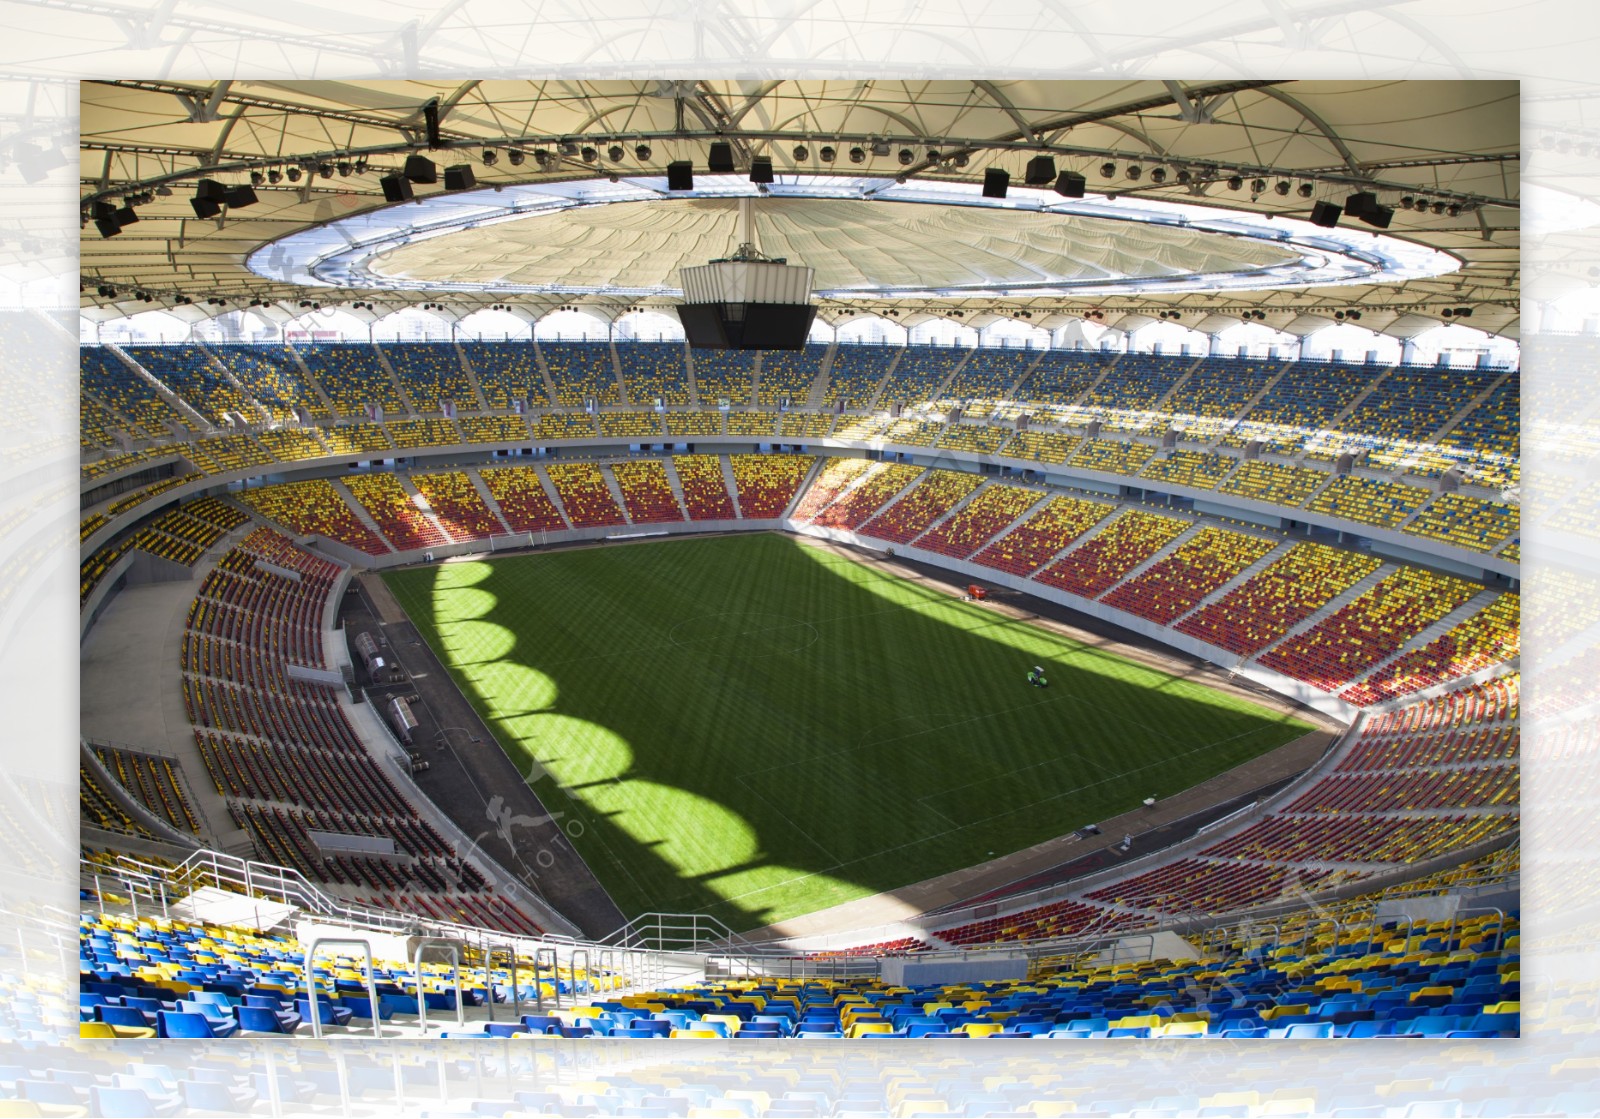 壮观的世界杯足球场高清图片